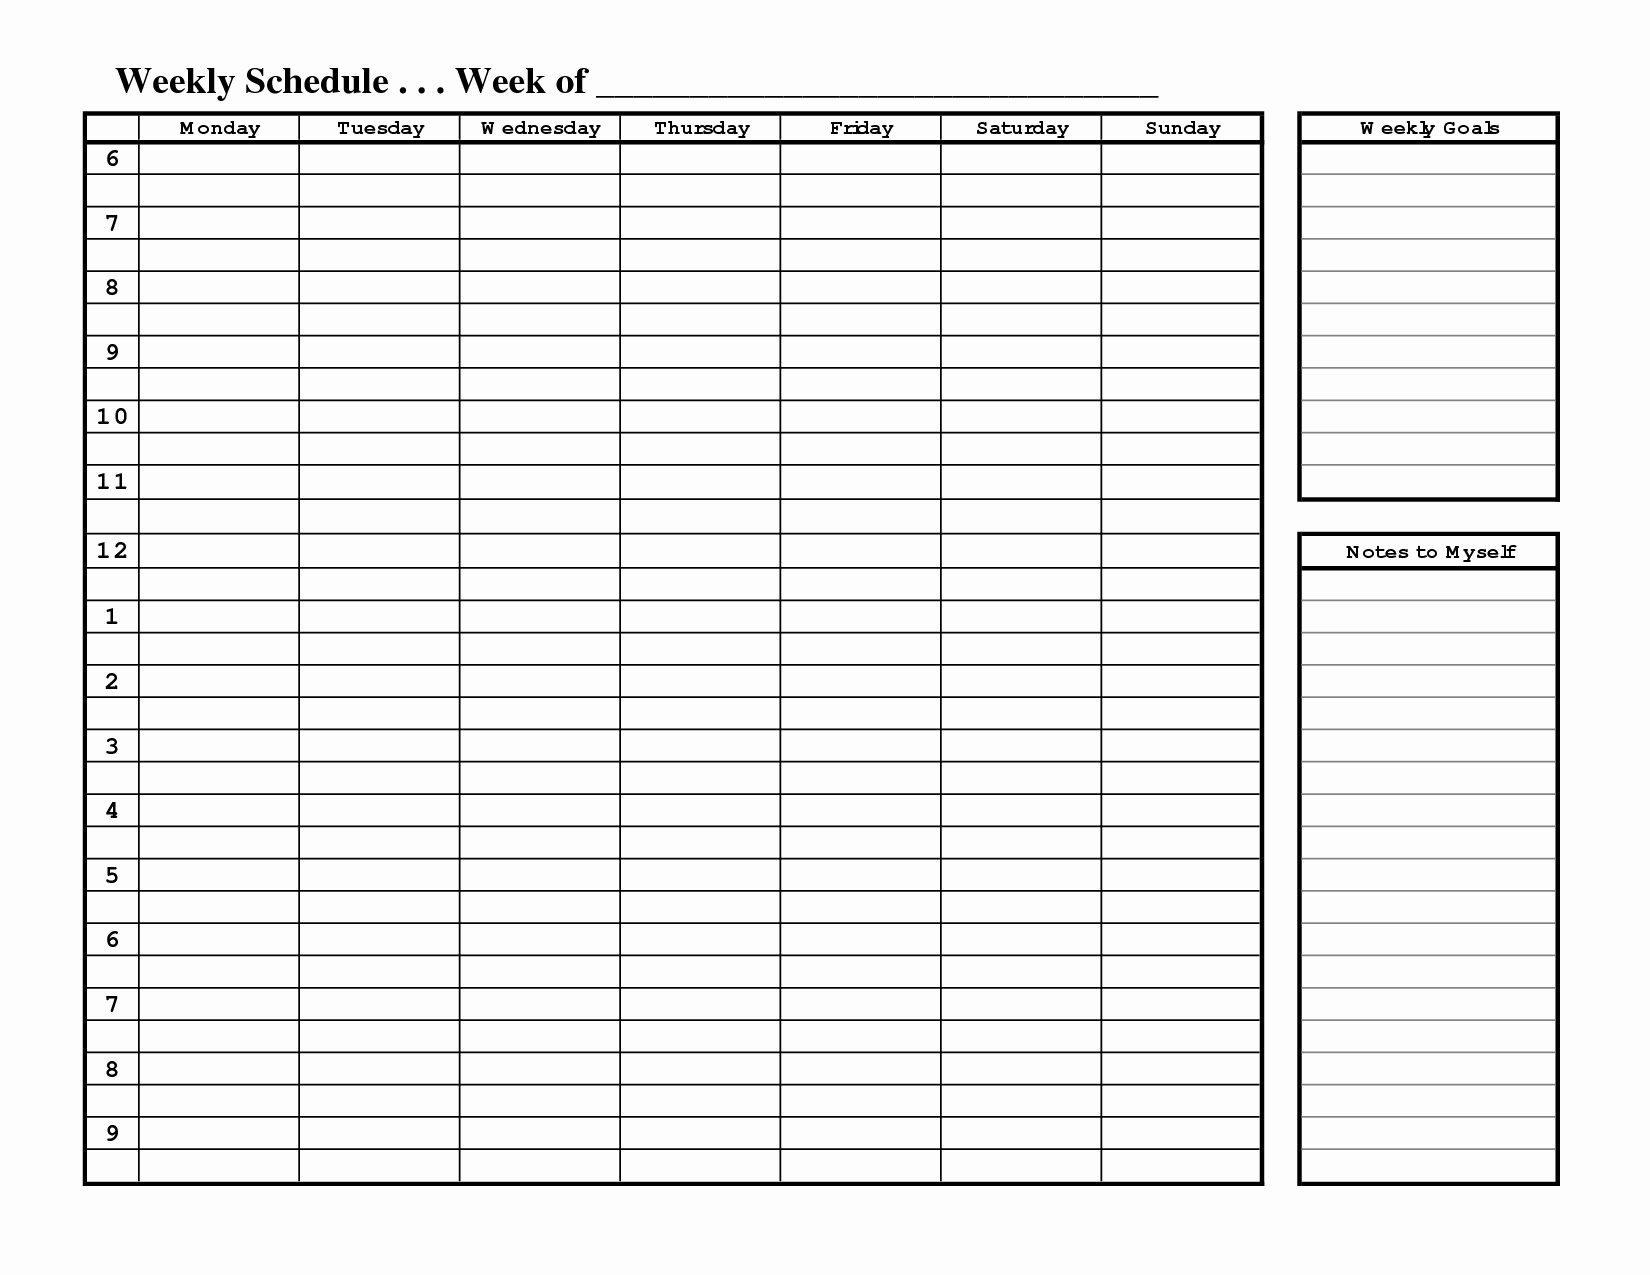 One Week Schedule Template Beautiful Free Printable Weekly Schedule Template